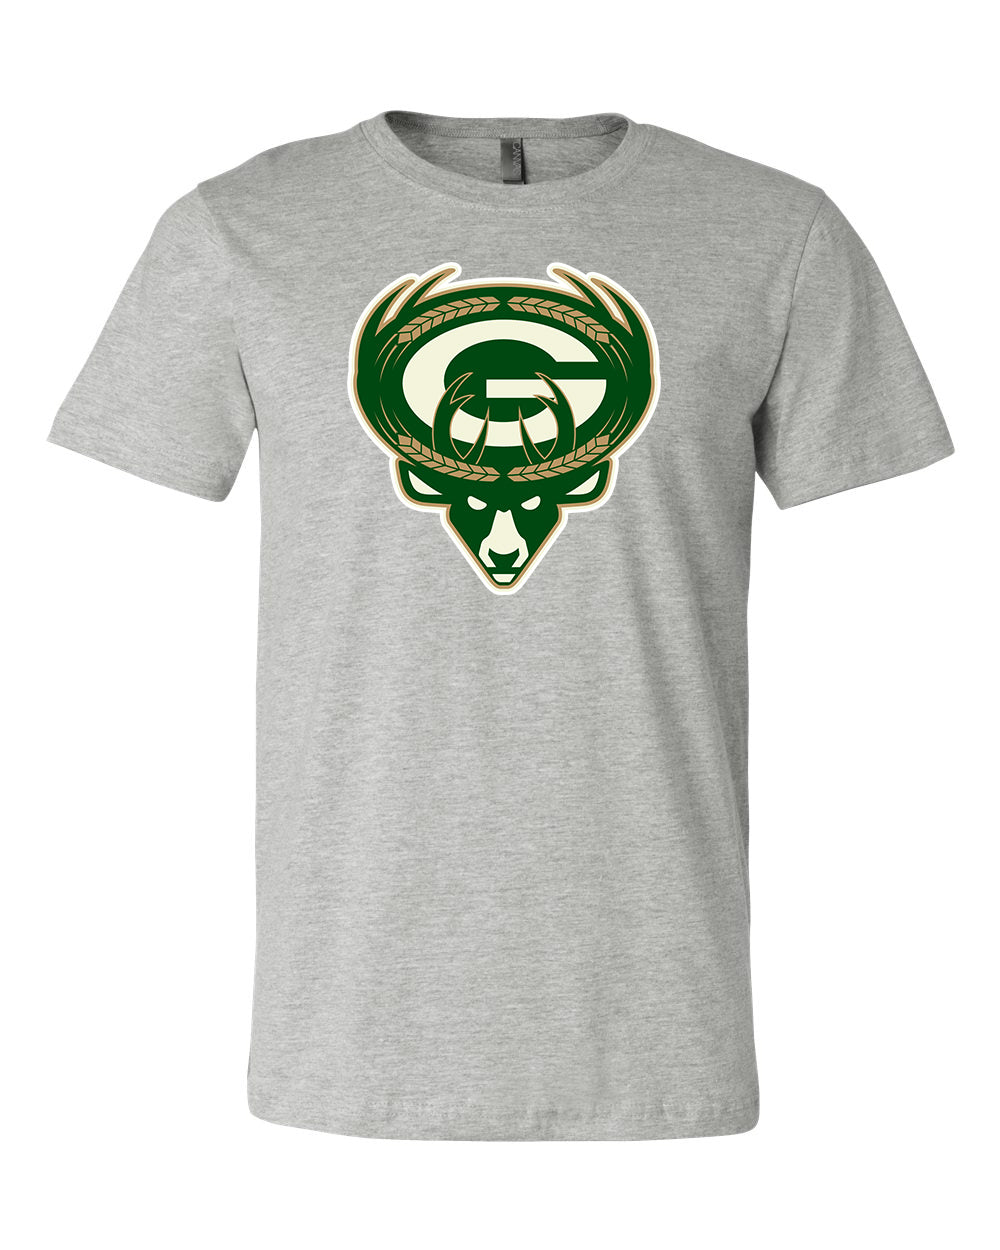 Green Bay Packers Milwaukee Bucks MASH UP Logo T-shirt 6 Sizes S